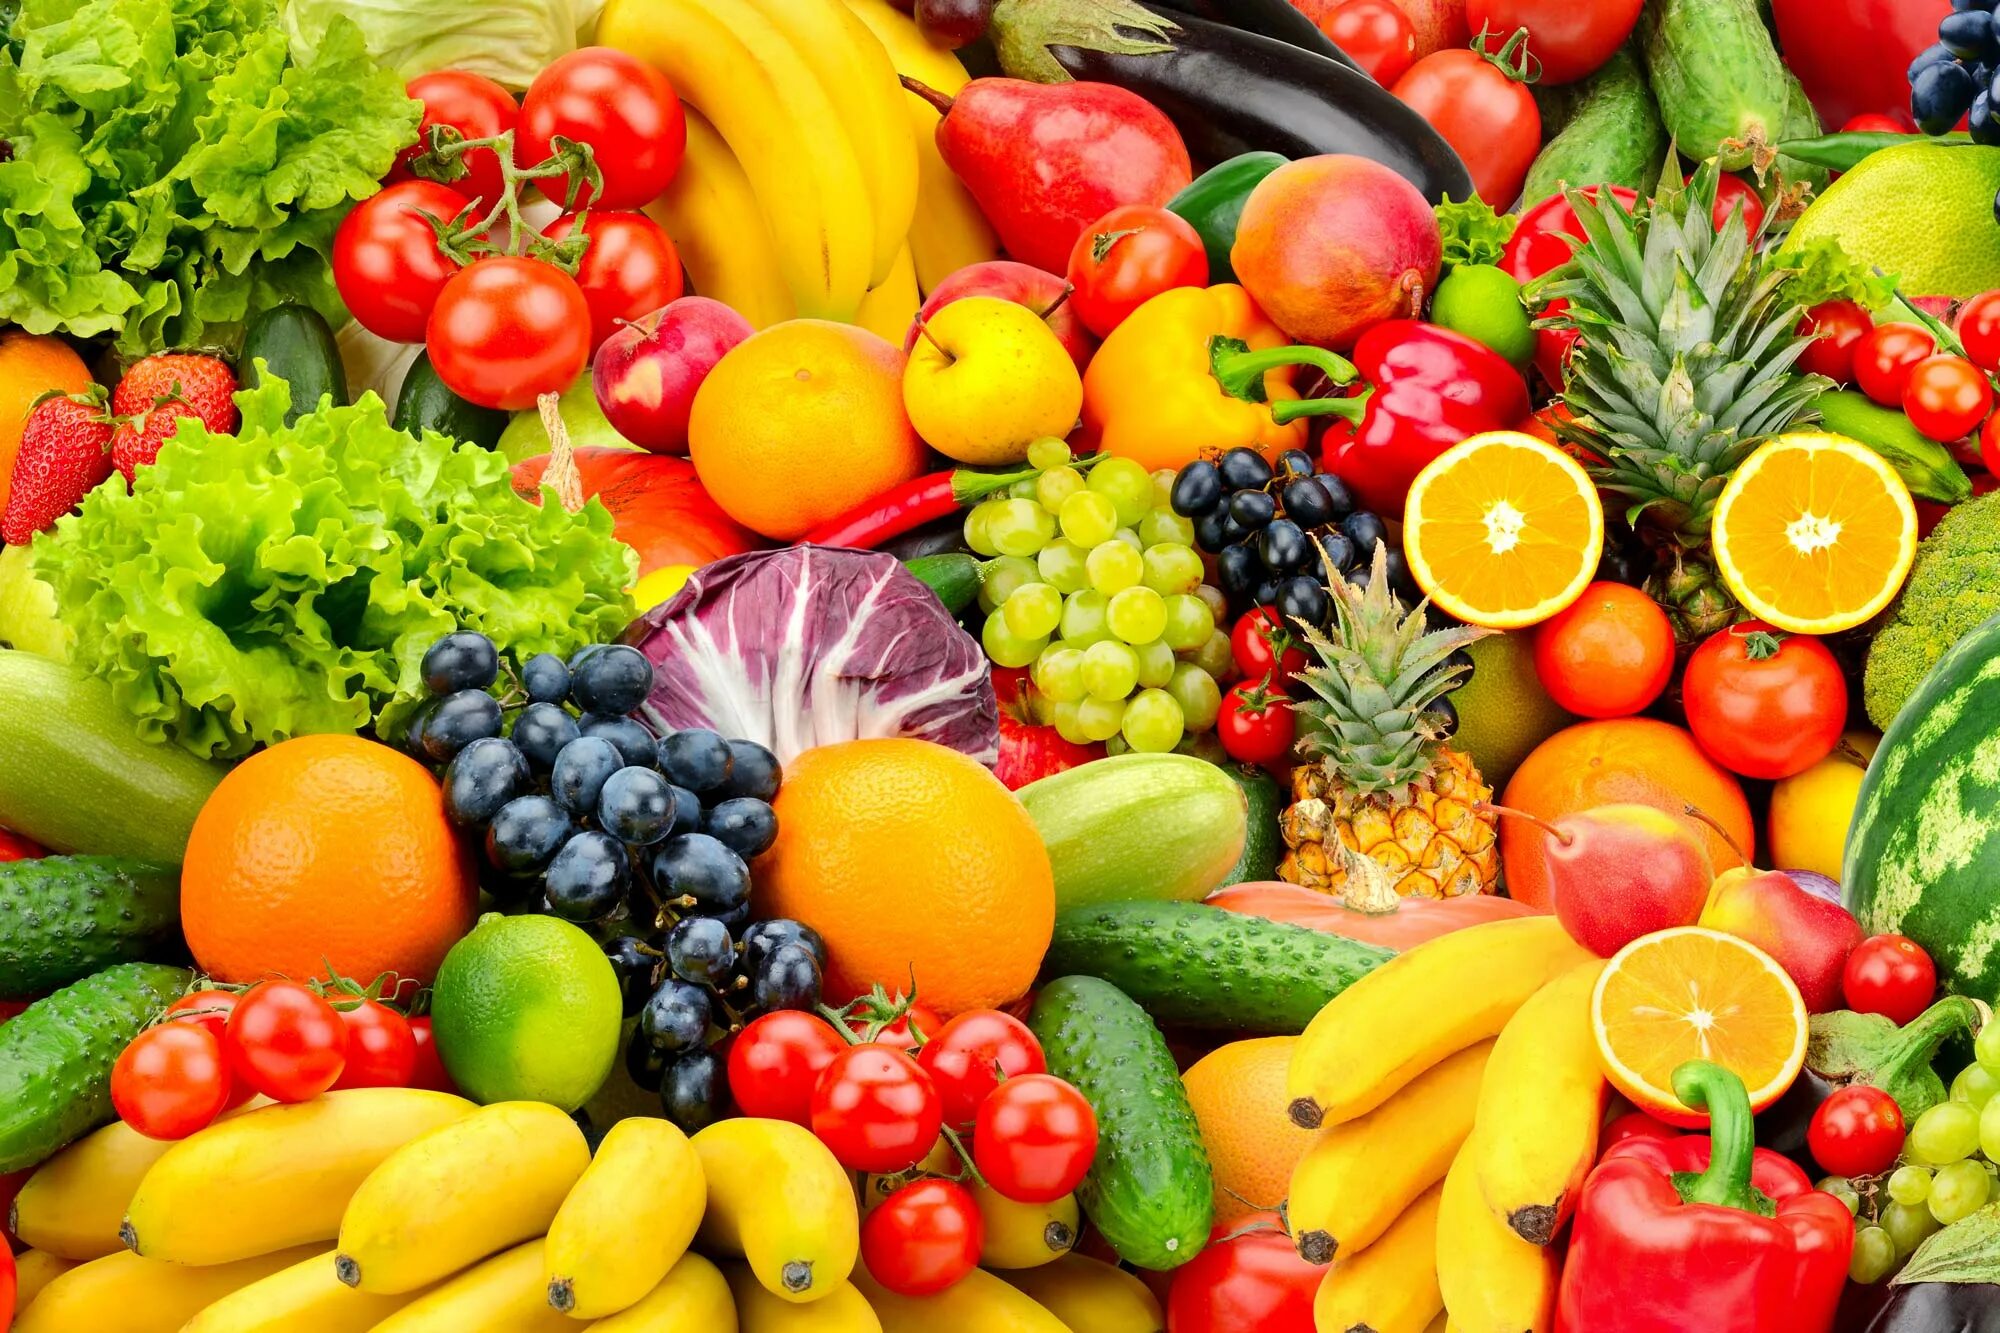 C y et. Овощи и фрукты. Красивые овощи. Фрукты овощи панорама. Яркие фрукты и овощи.